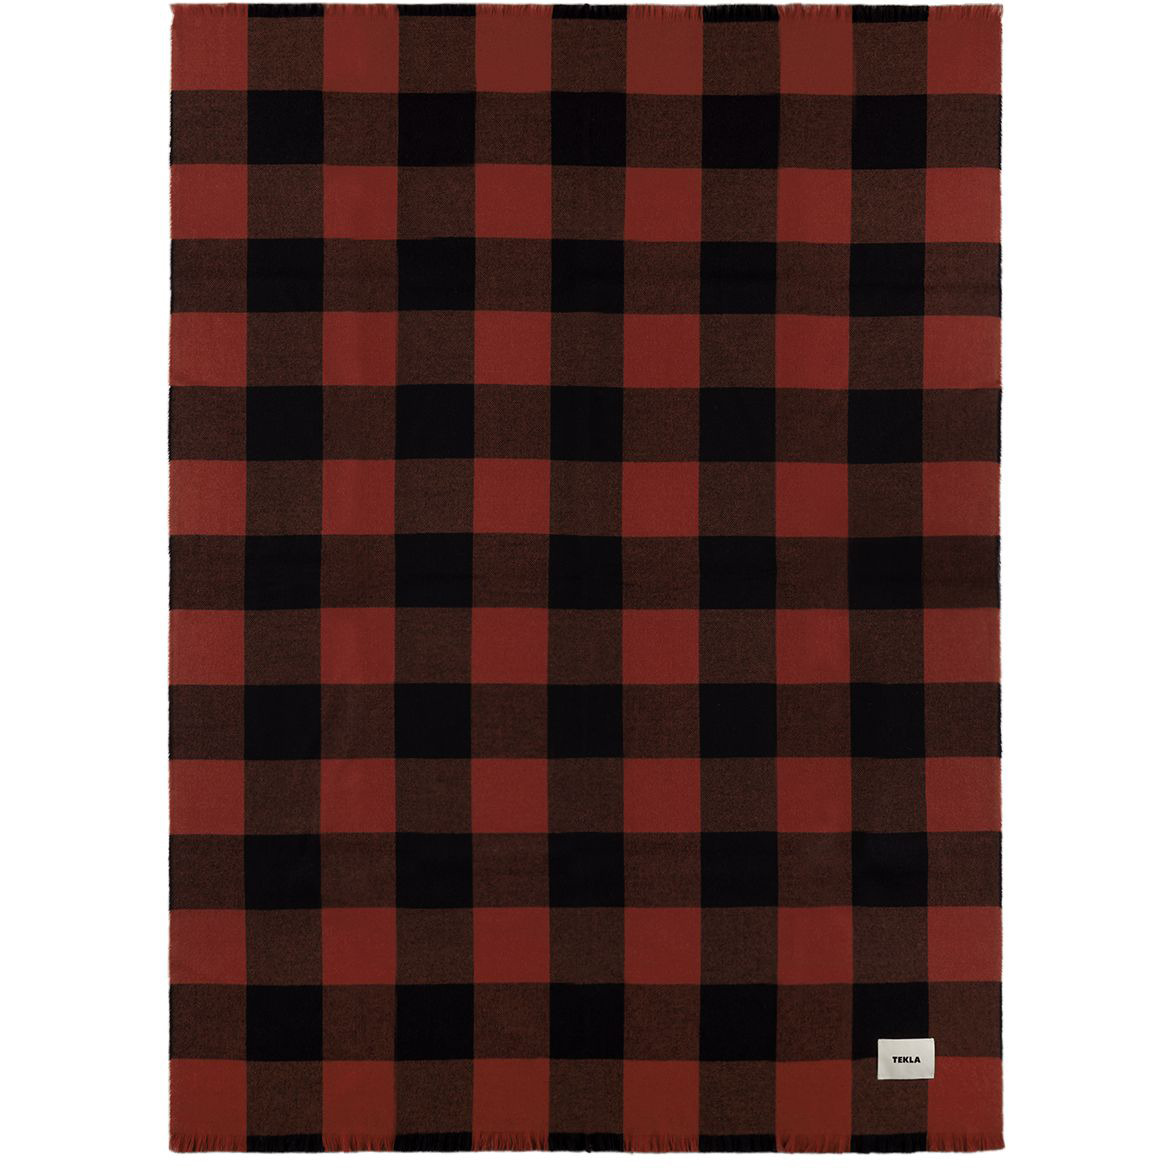 Tekla Red & Black Gingham Blanket - image 1